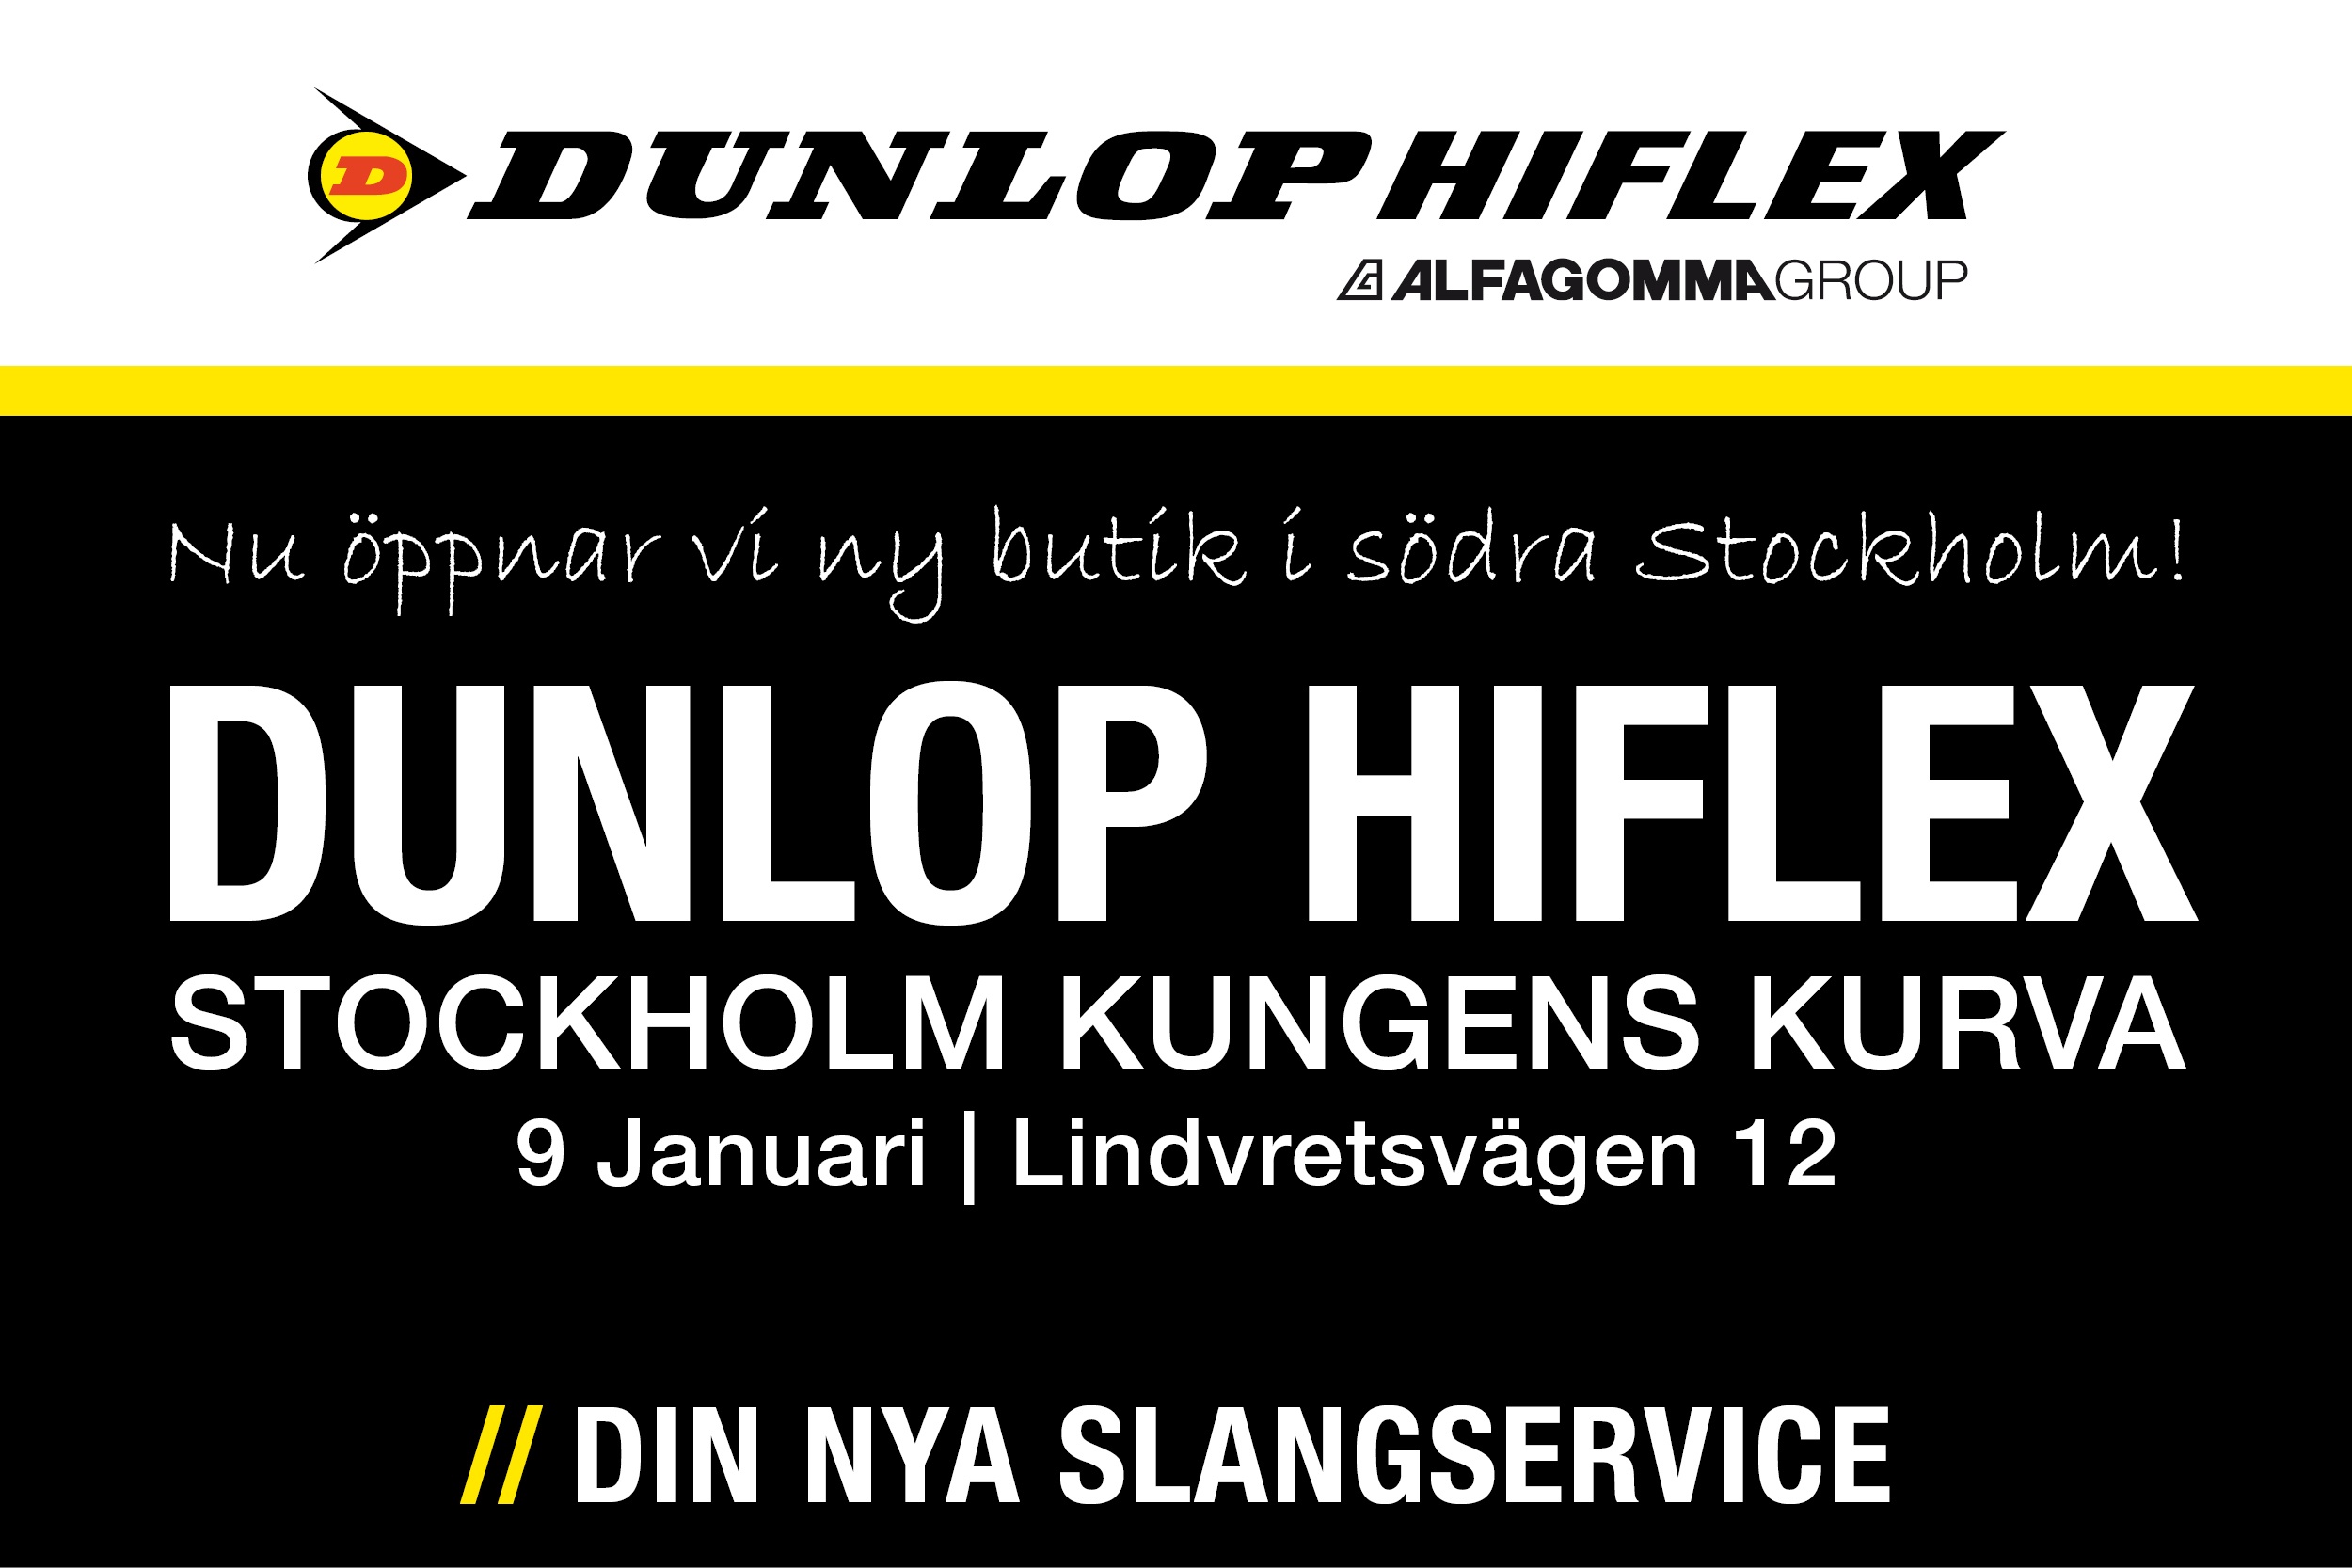 Dunlop Hiflex öppnar ny butik och slangservice i södra Stockholm